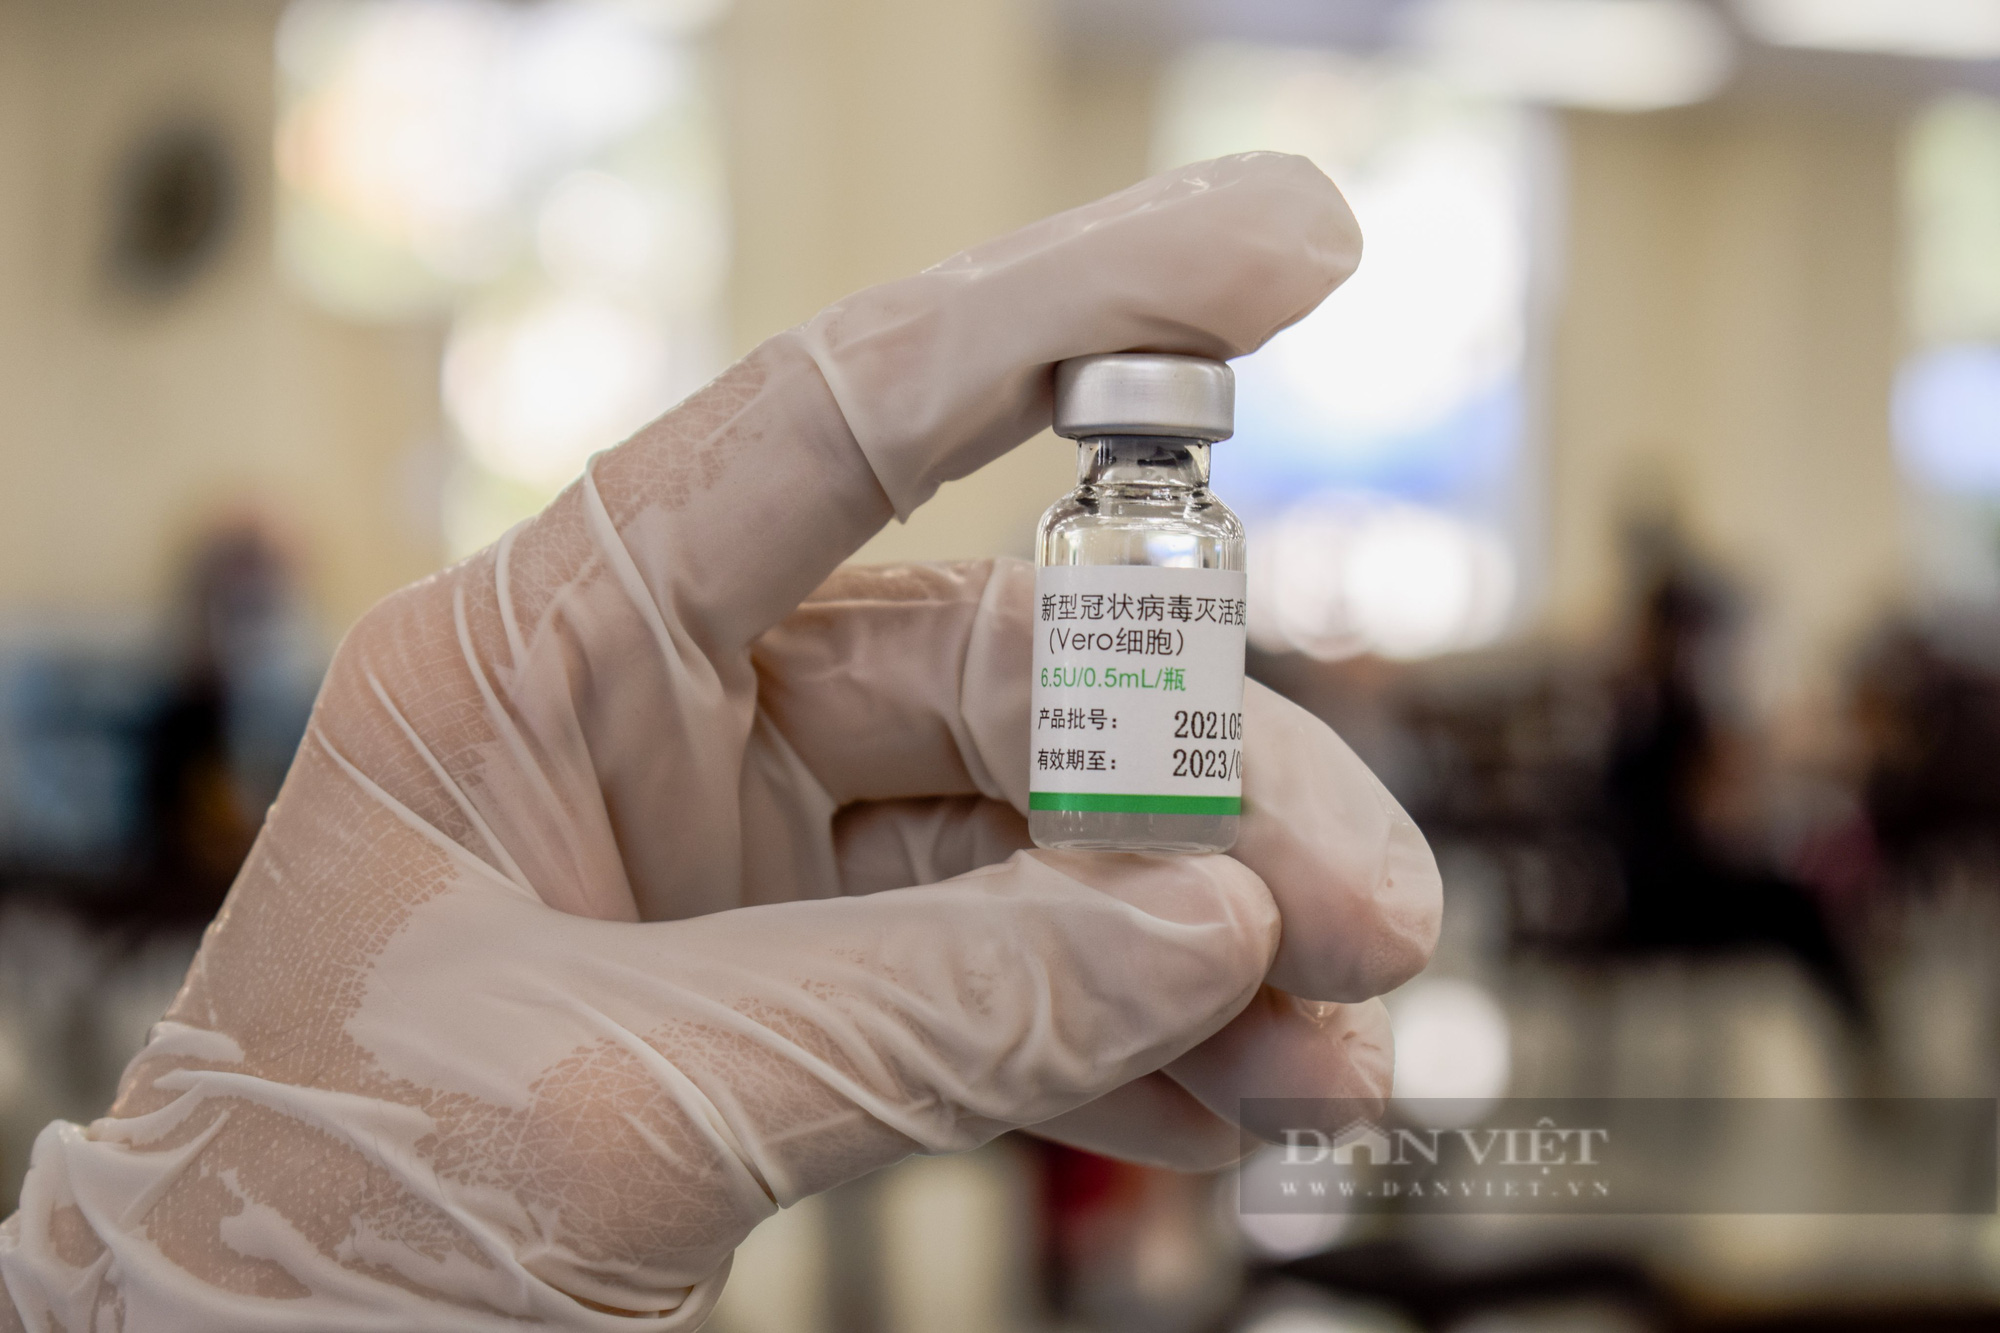 Đồng Nai huy động nhân lực để chuẩn bị tiêm 500.000 liều vaccine Vero Cell cho người dân vùng nguy cơ cao - Ảnh 1.